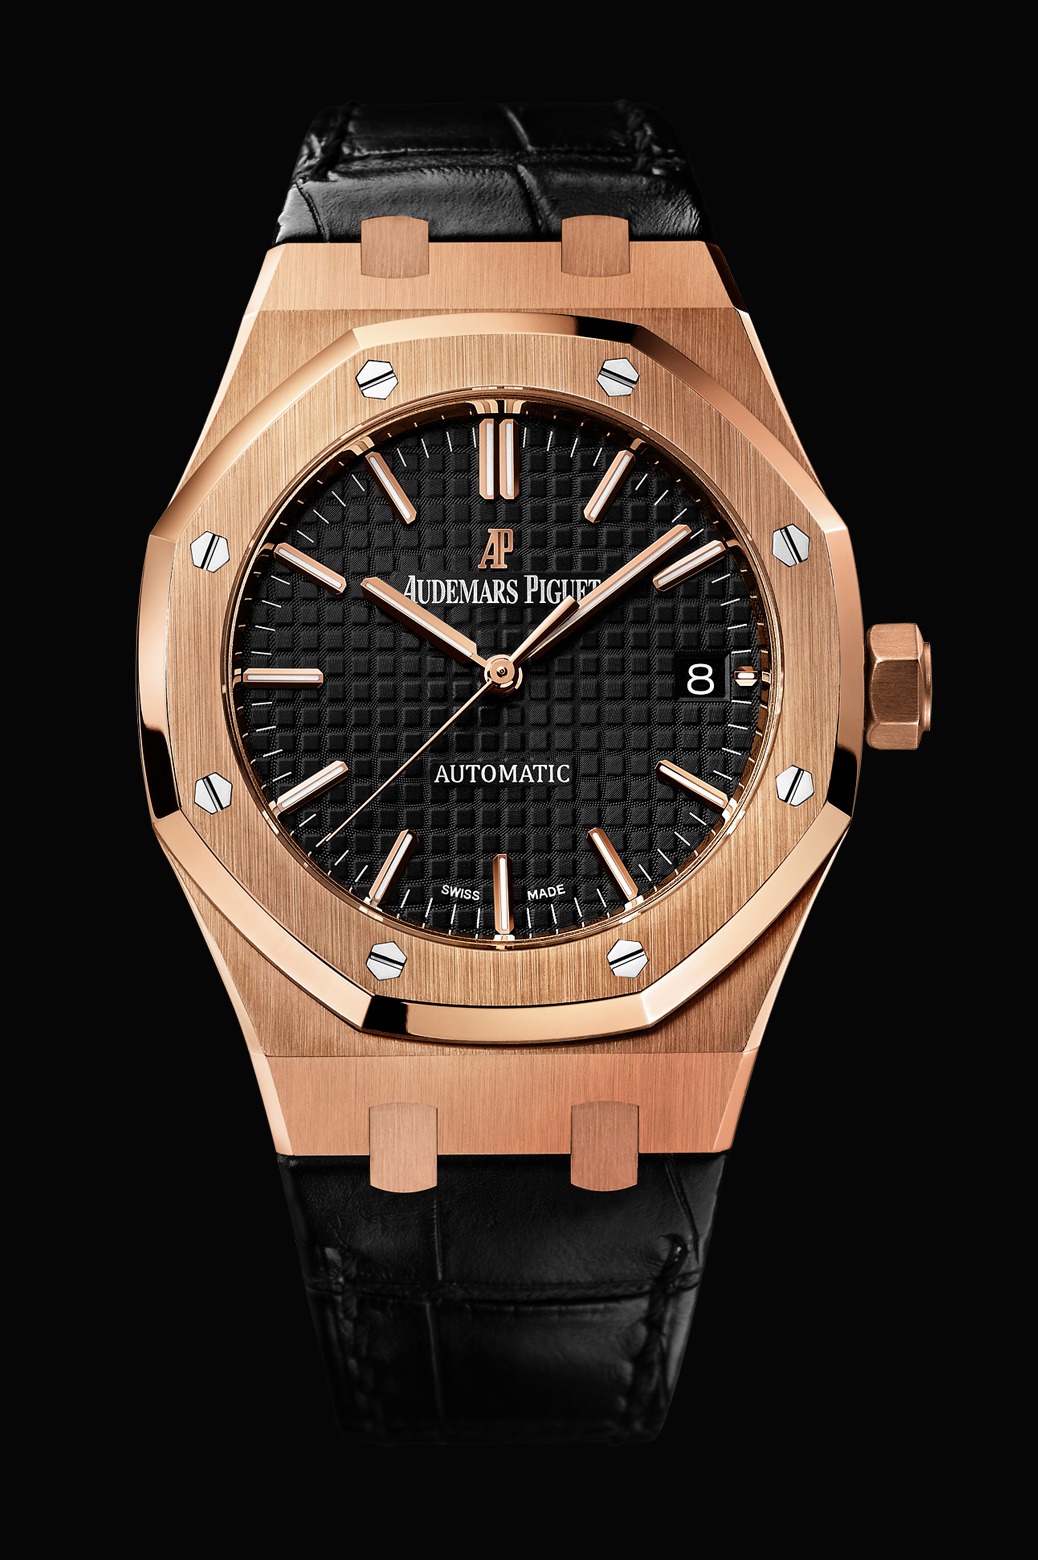 Audemars Piguet Royal Oak Automatic Pink Gold watch REF: 15450OR.OO.D002CR.01